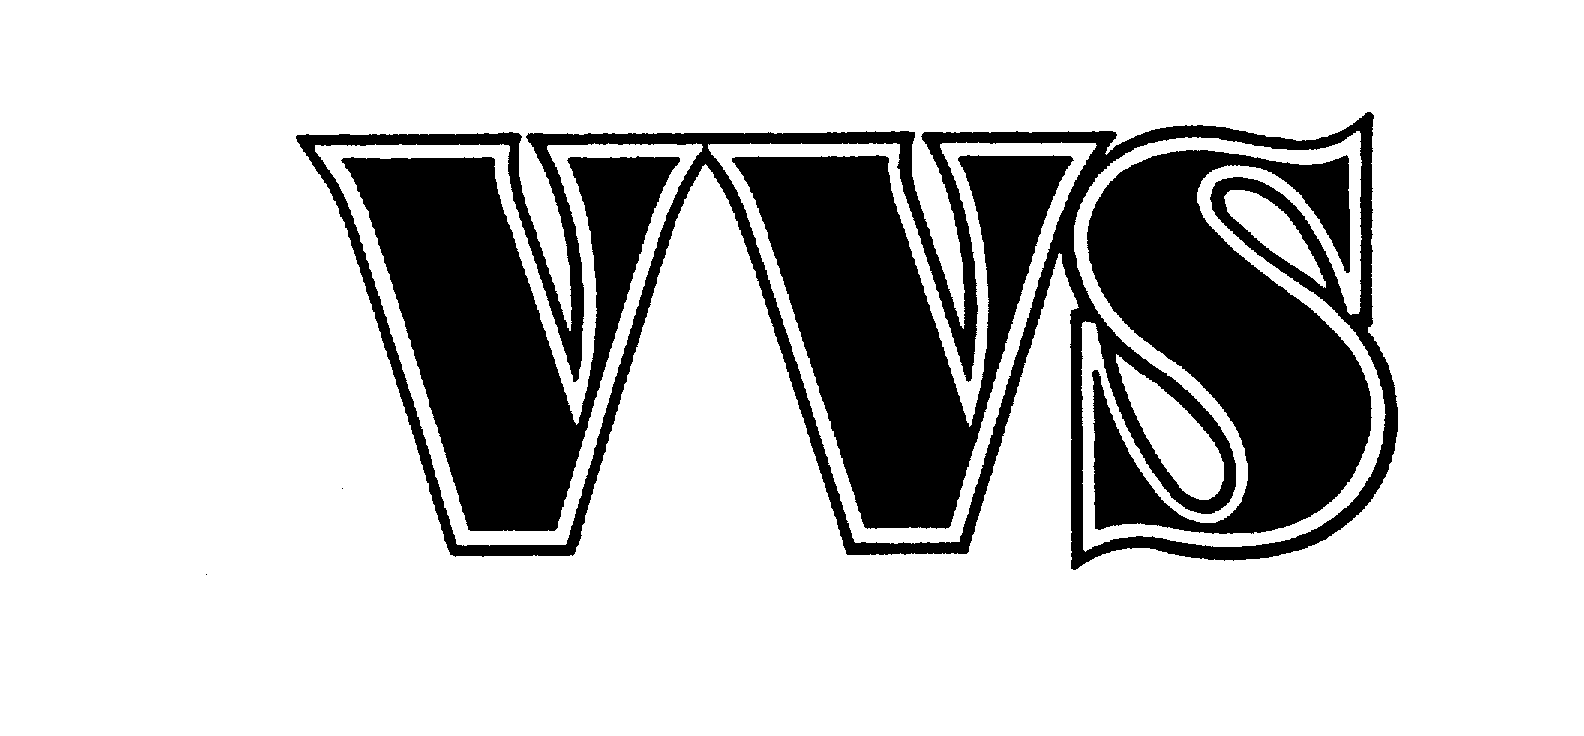 VVS